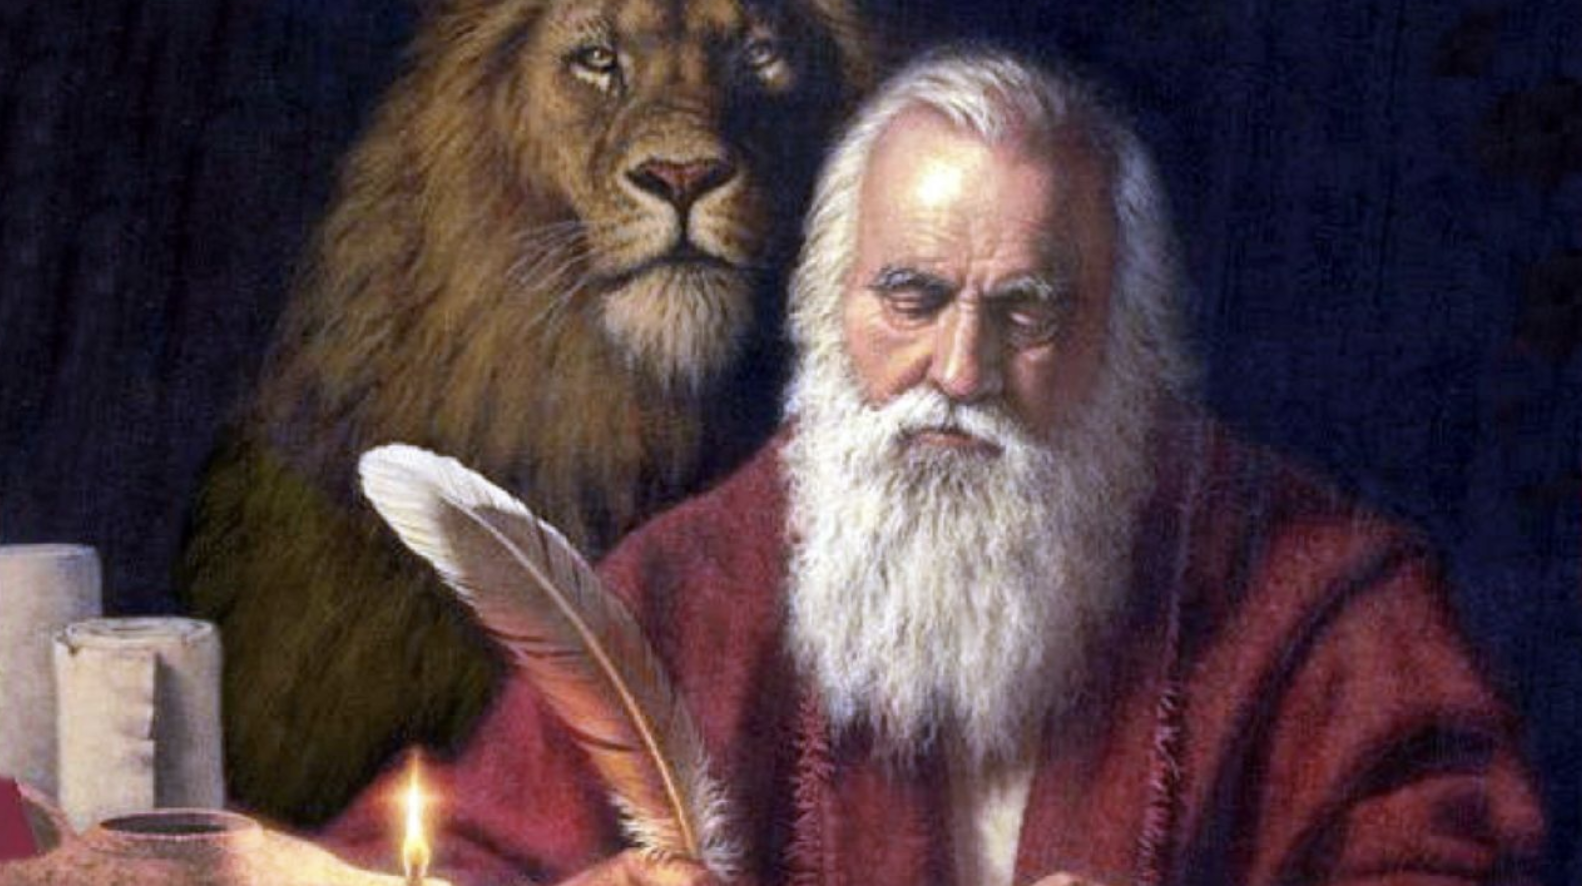 imagen de marcos de leon, un santo apostolico.